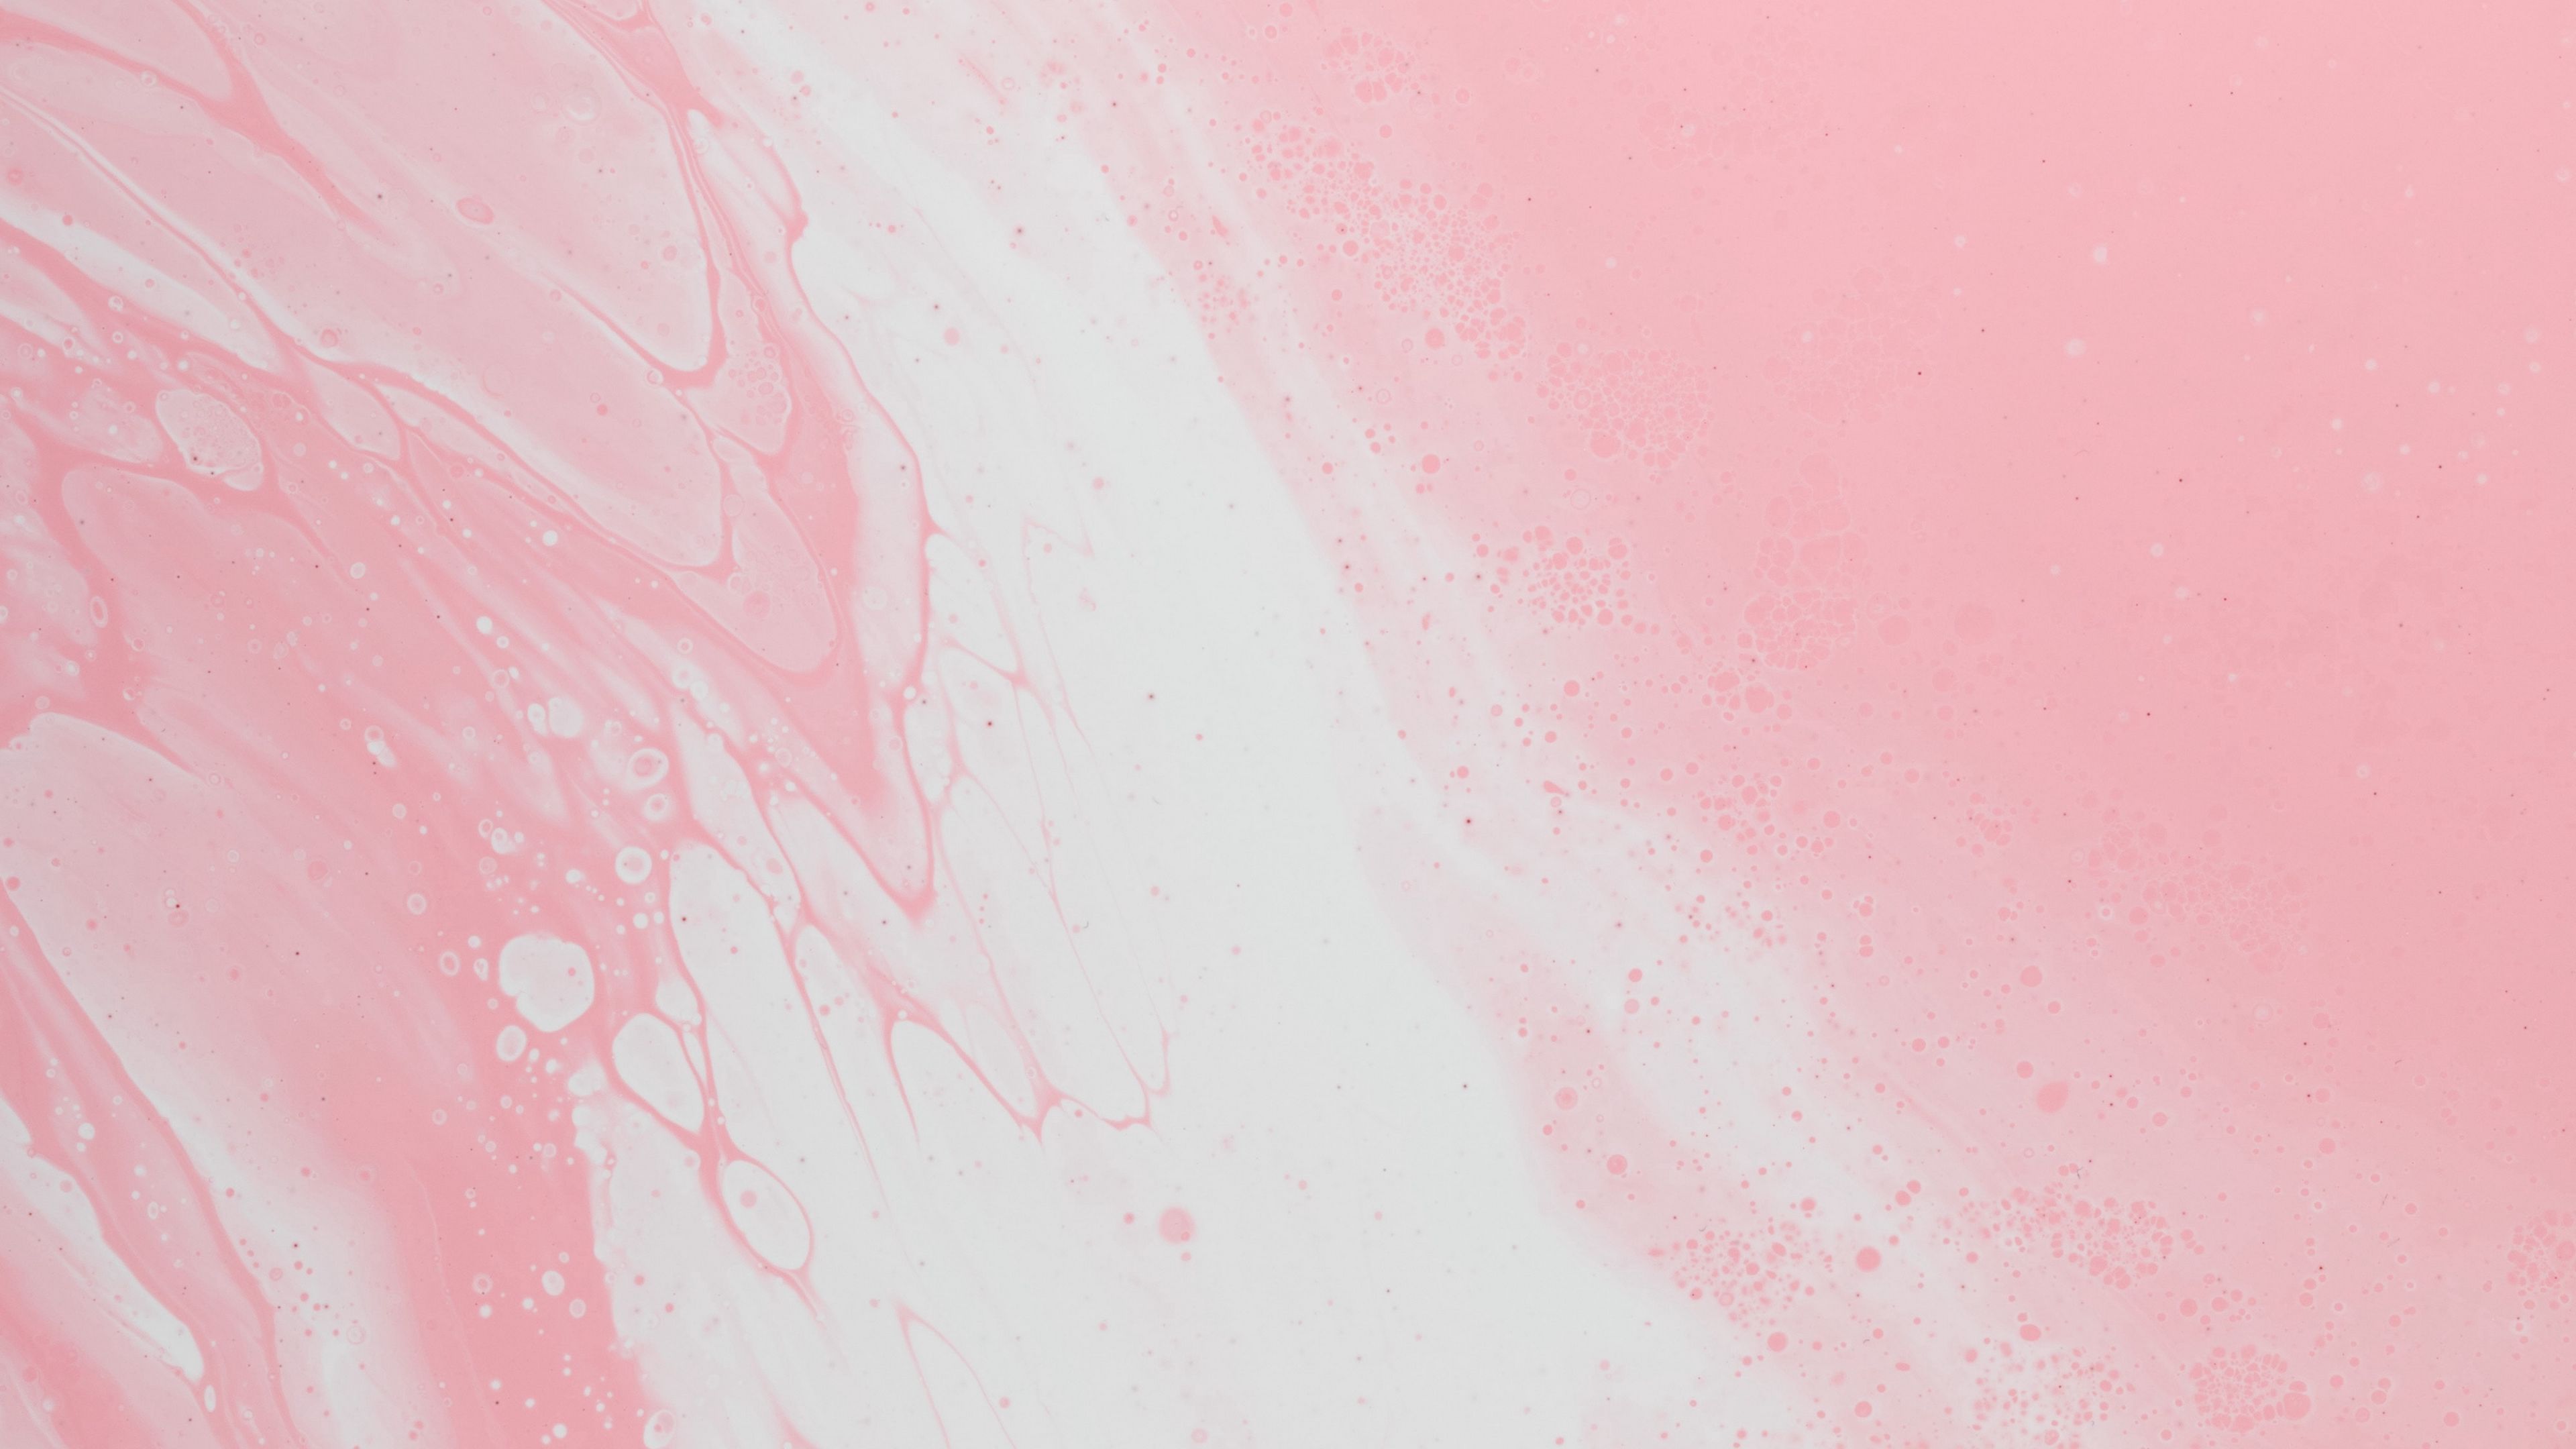 Wallpaper stains và liquid màu hồng sẽ khiến bất kỳ ai cũng thích thú và muốn sở hữu. Sản phẩm mang đến cho bạn cảm giác như được ngâm trong cơn sóng lớn của nước tuyết tan chảy. Chất lượng hình ảnh tuyệt vời và họa tiết độc đáo sẽ khiến bạn bị mê hoặc.